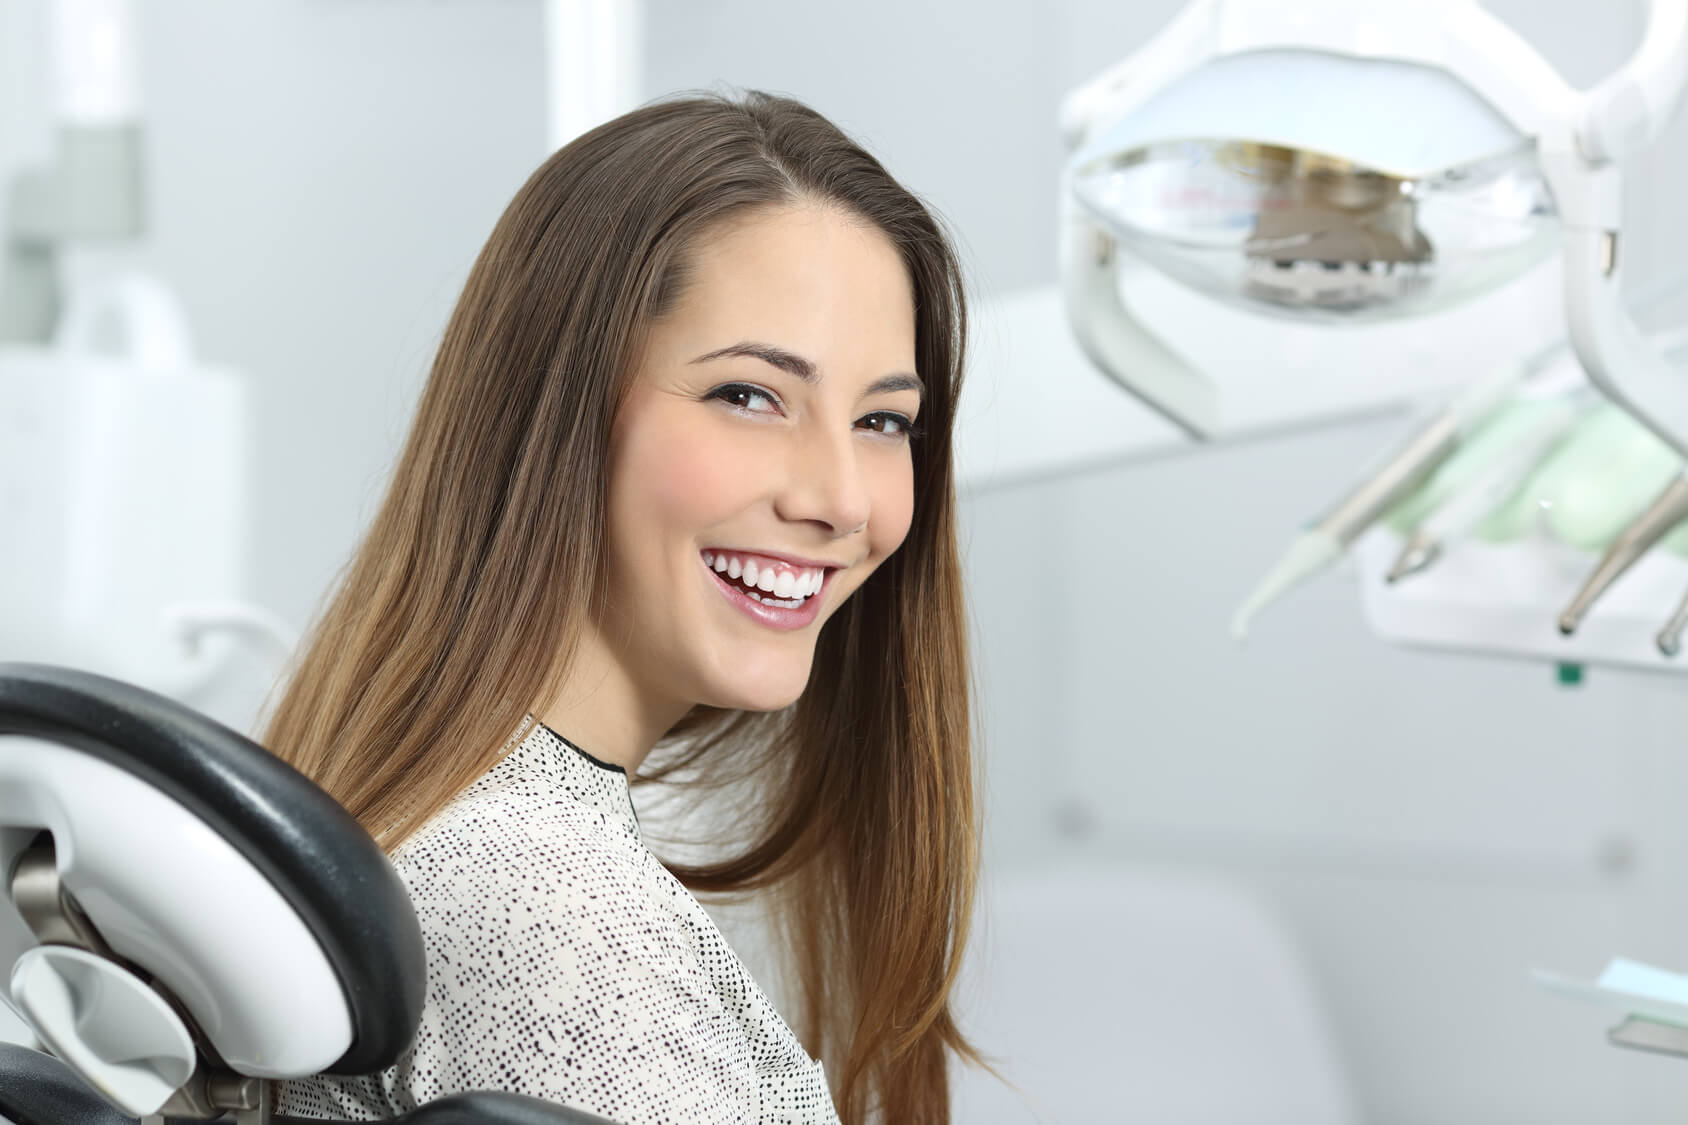 Jakie korzyści przynoszą nam regularne przeglądy stomatologiczne?